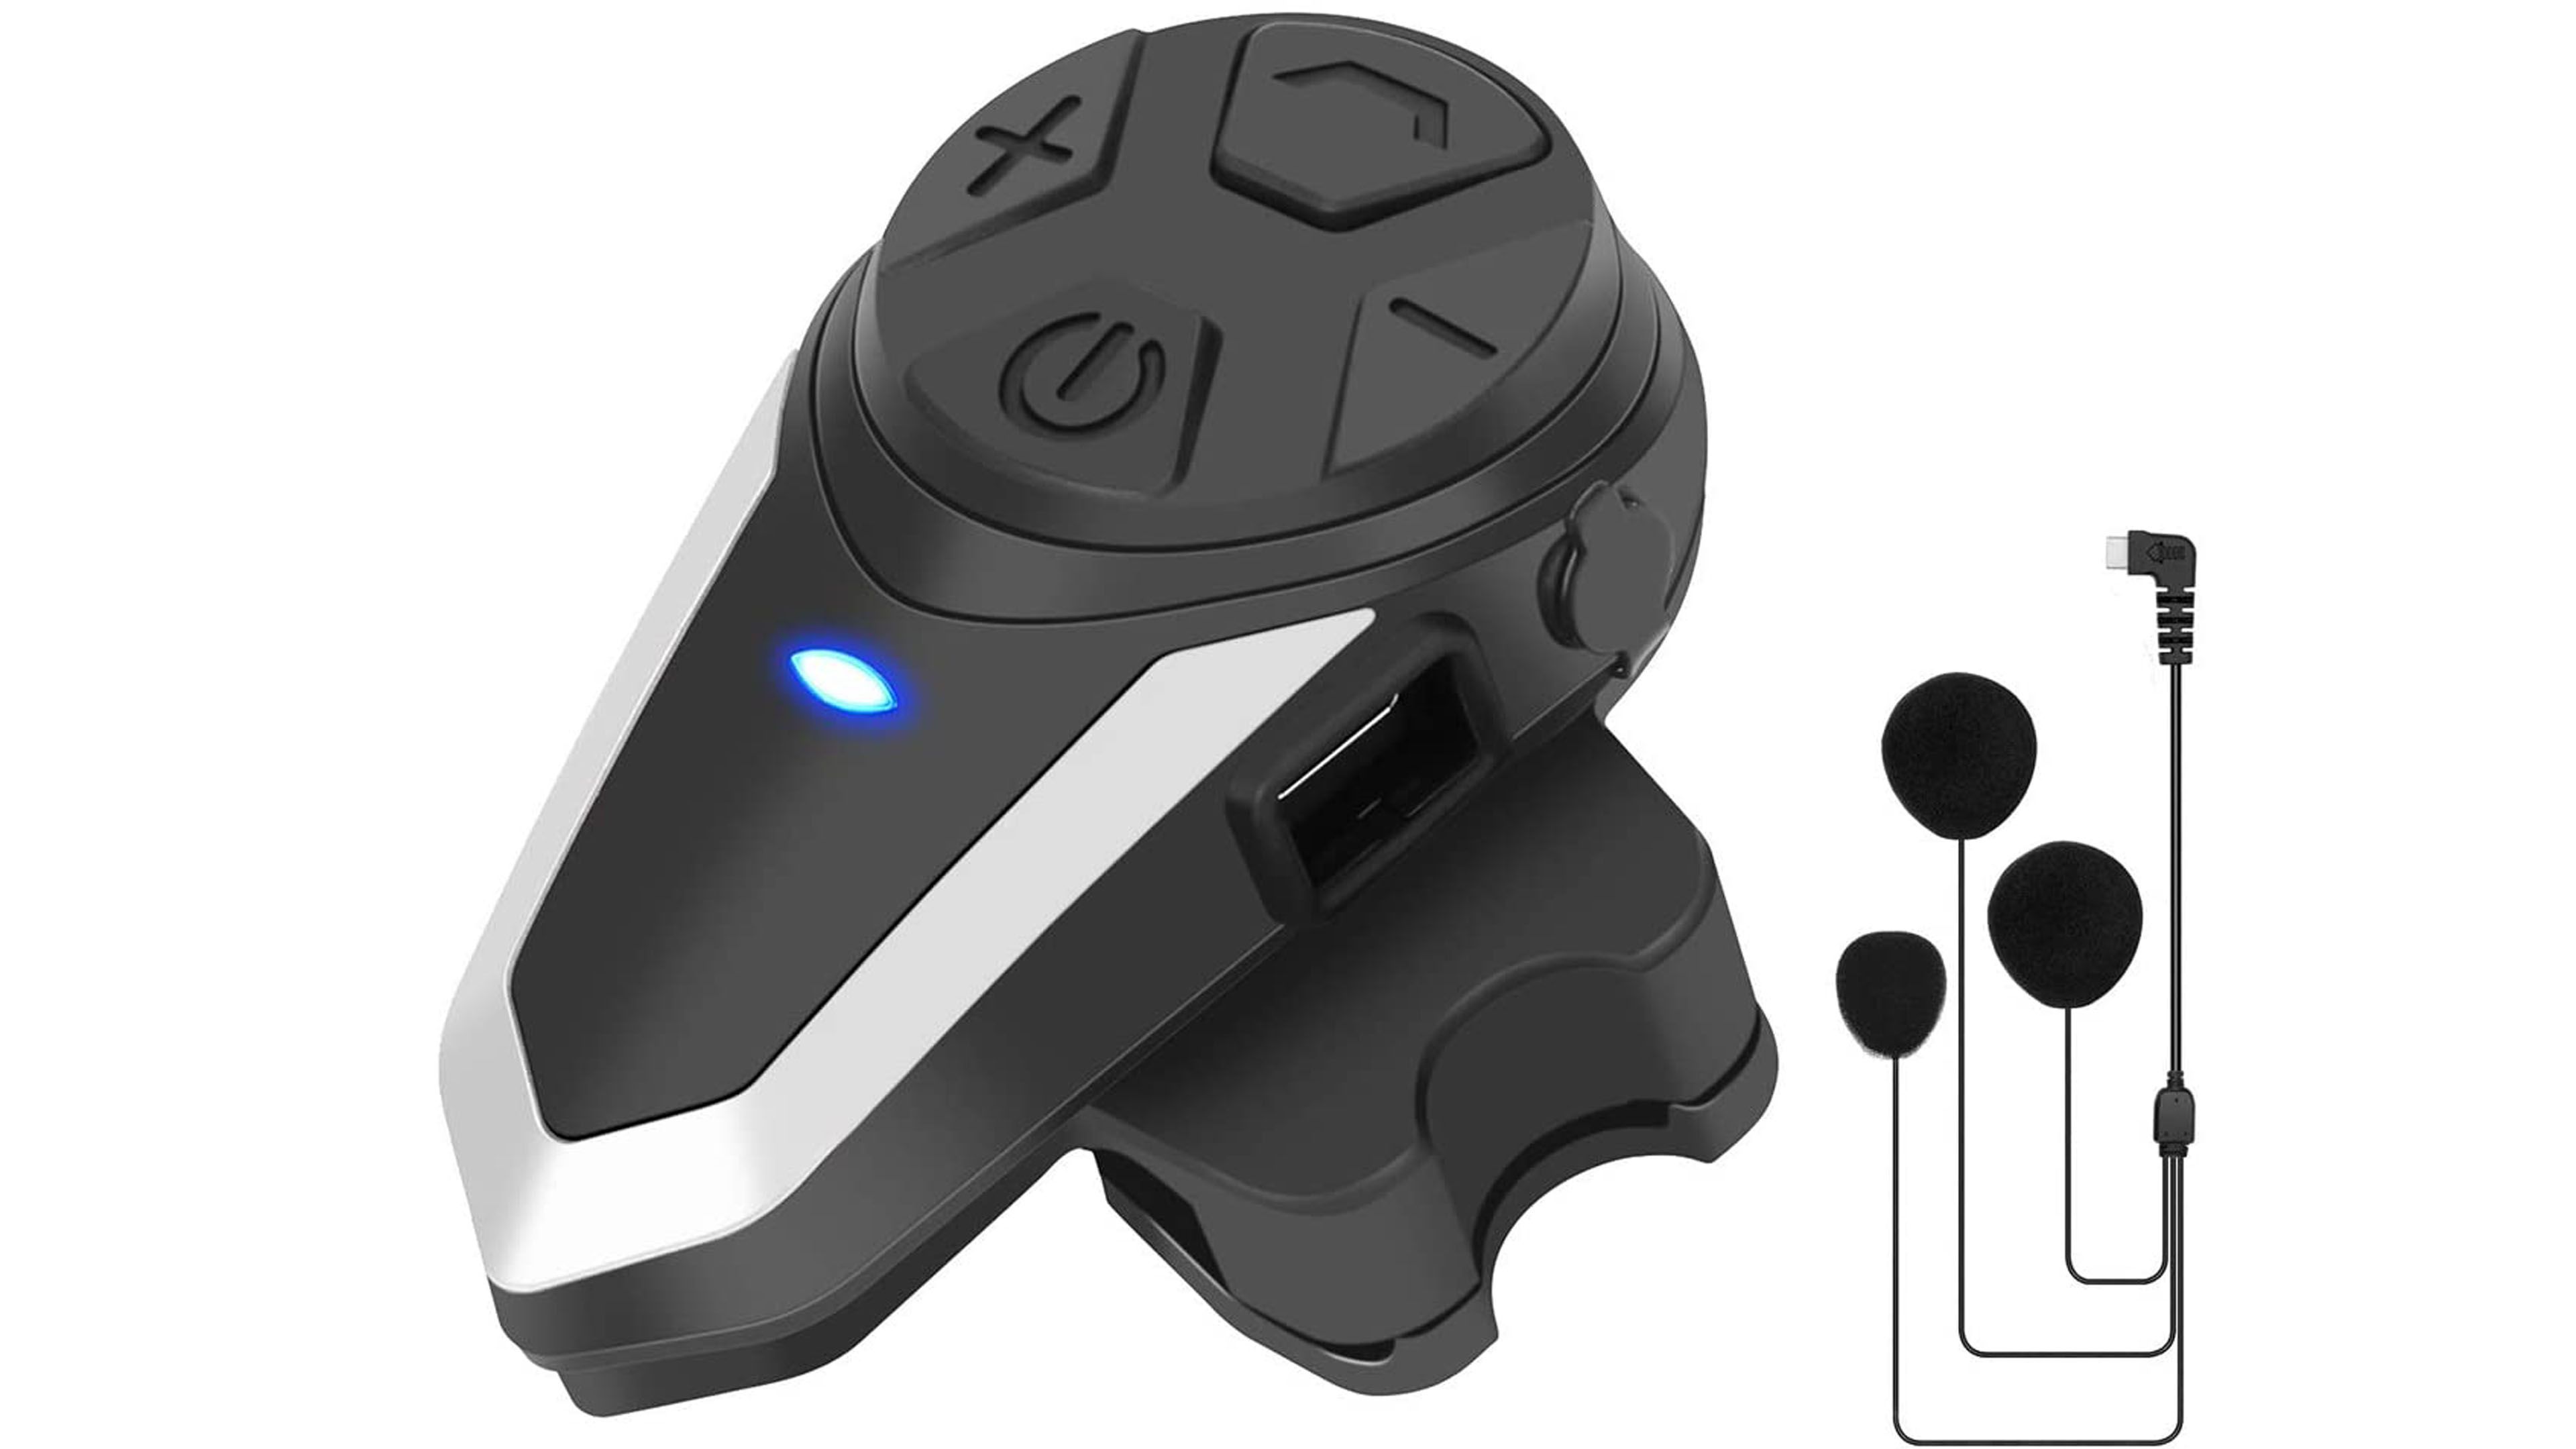 Manos libres Bluetooth Tipo Intercomunicador – Moto Lujos Mellos